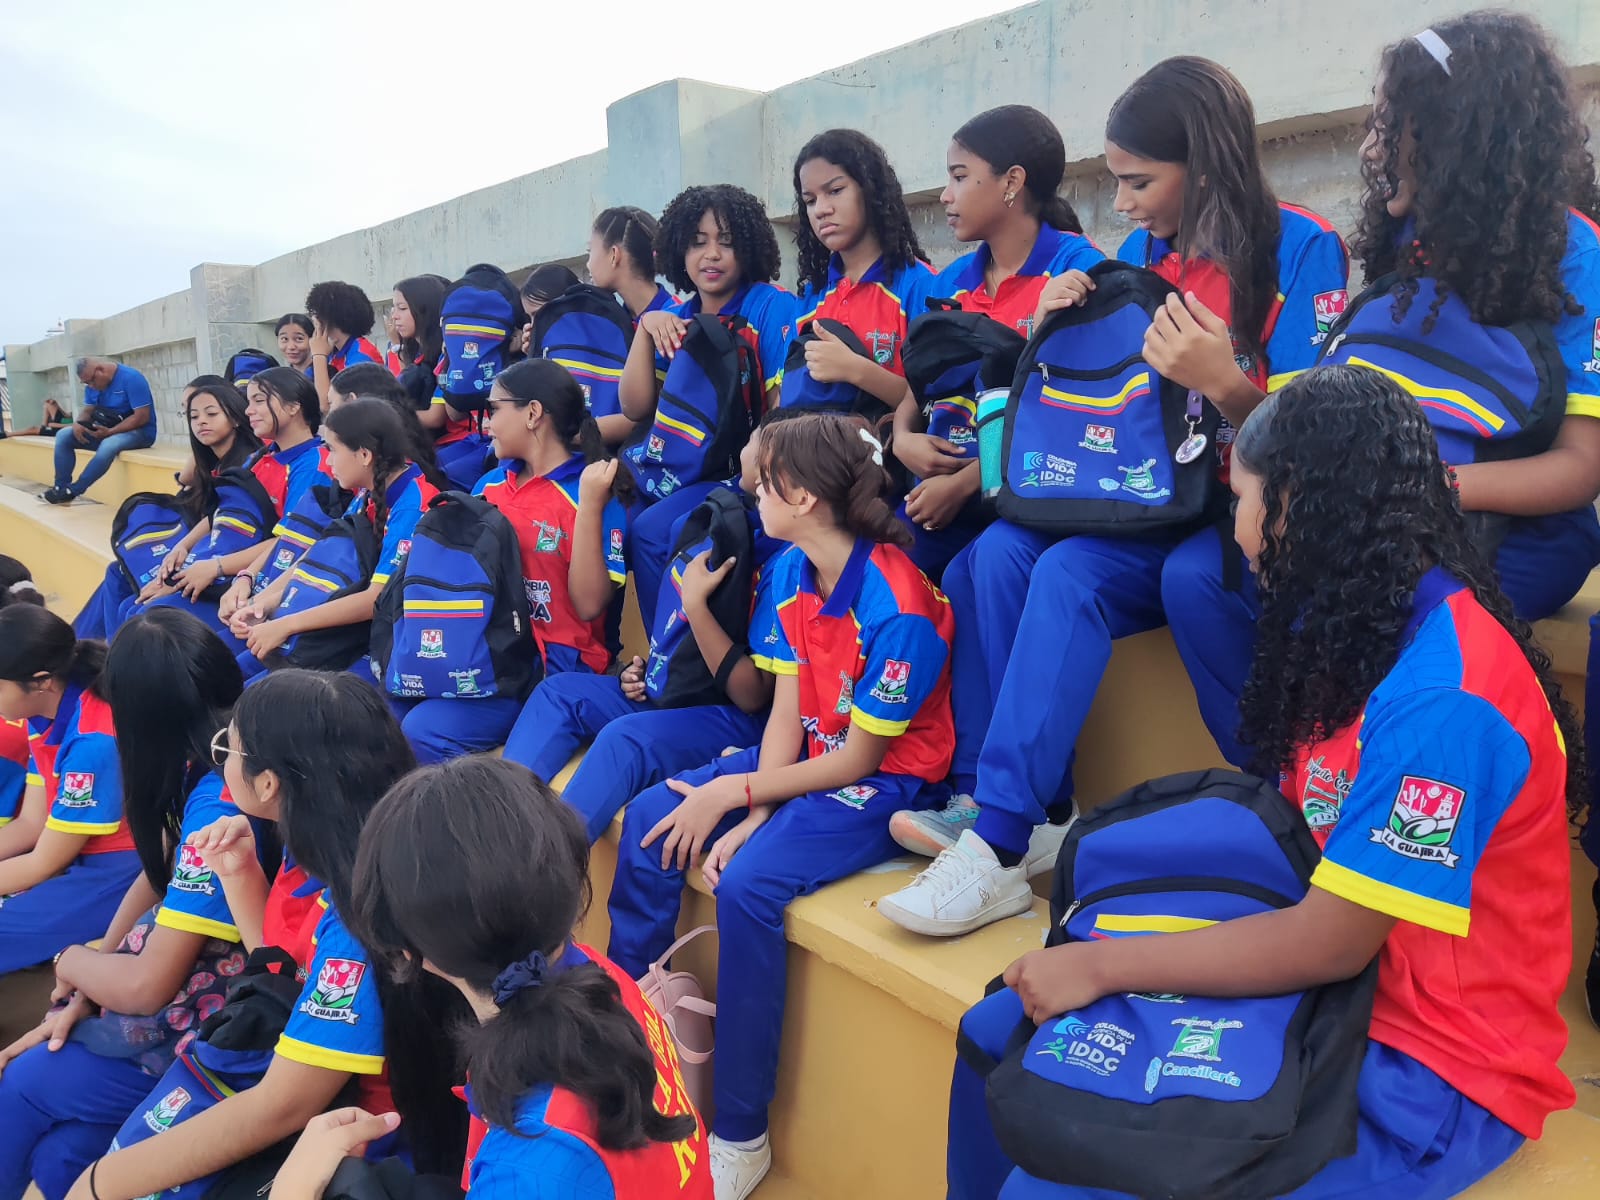 https://www.notasrosas.com/La Liga de Rugby De La Guajira fortalece el amor propio y las habilidades de las niñas, niños y jovenes del departamento